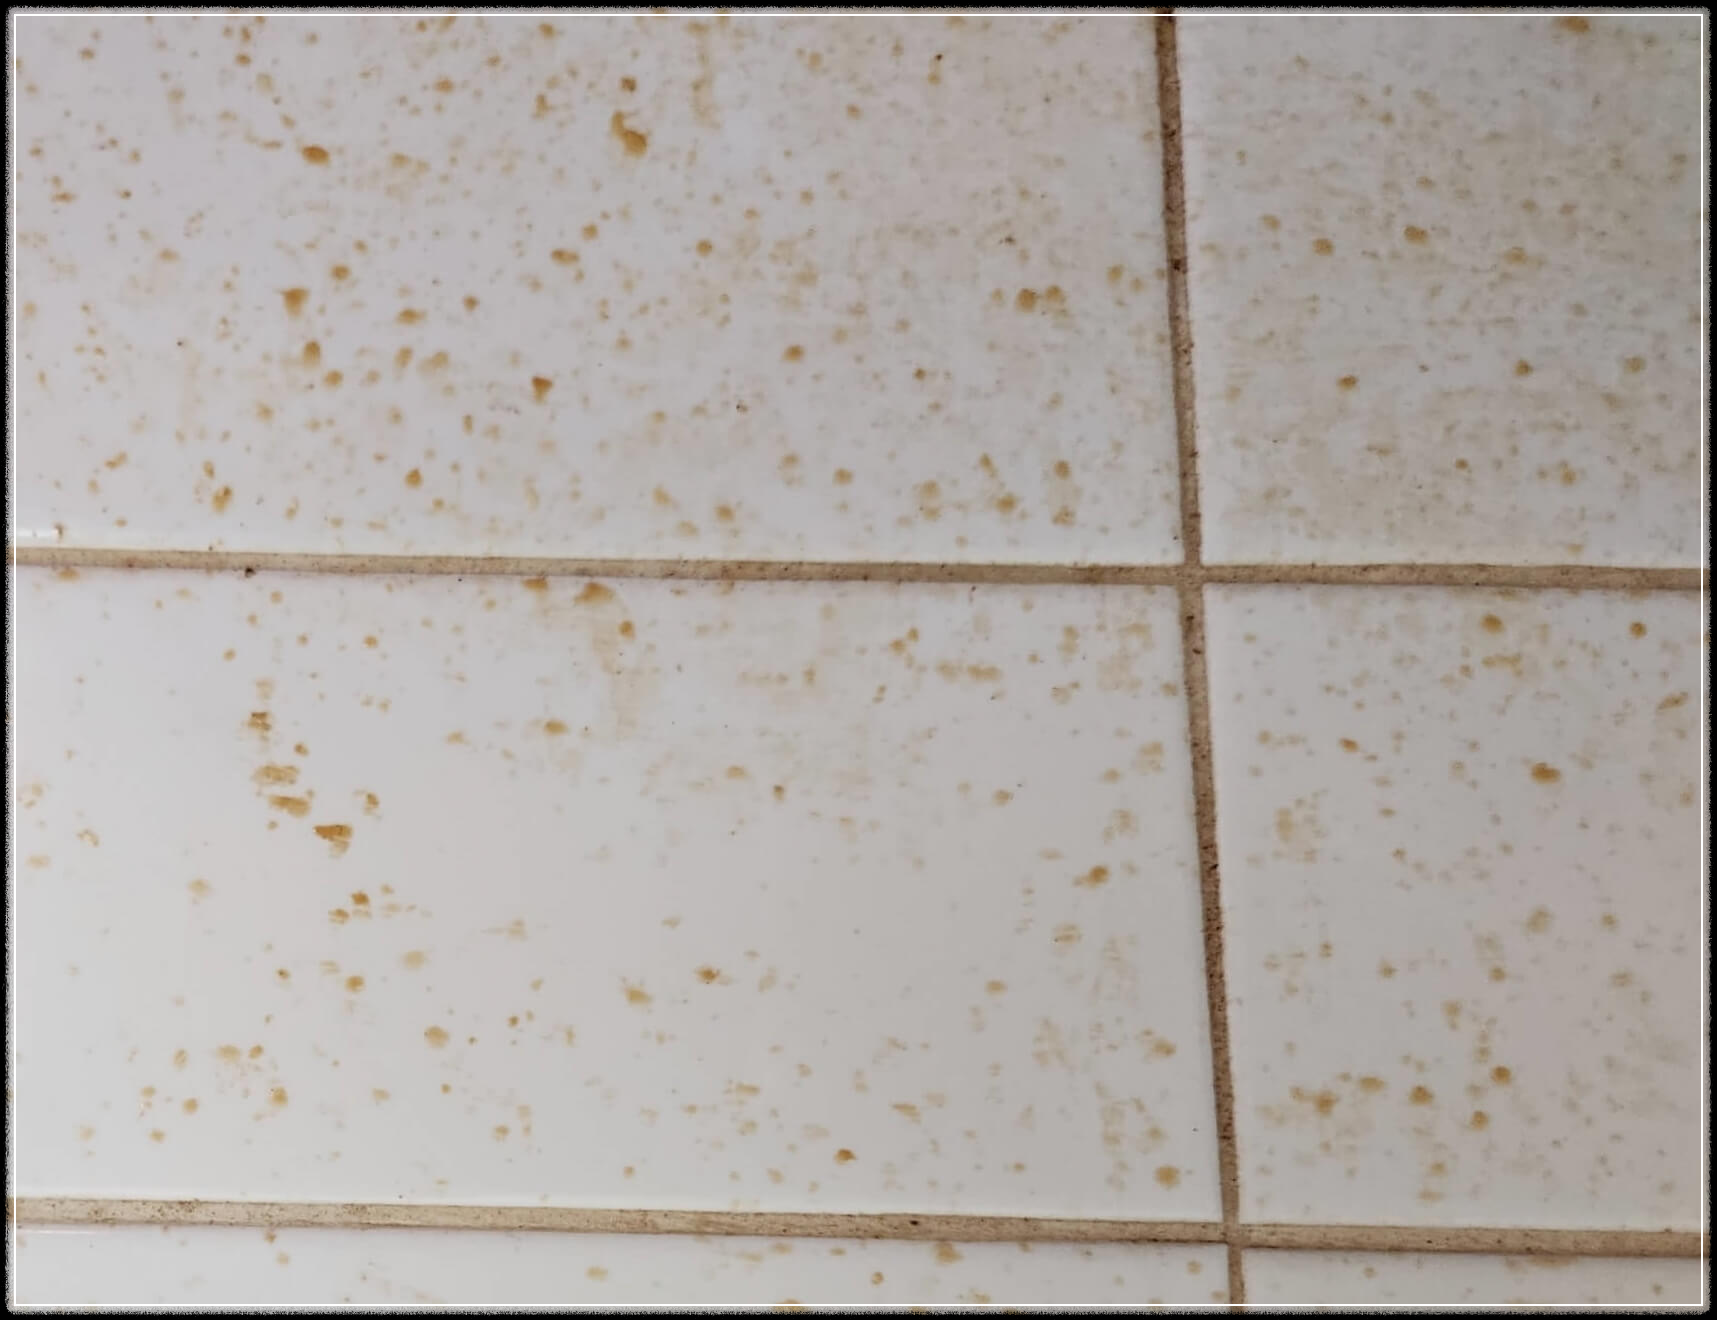 기름때로 오염된 주방 벽면타일